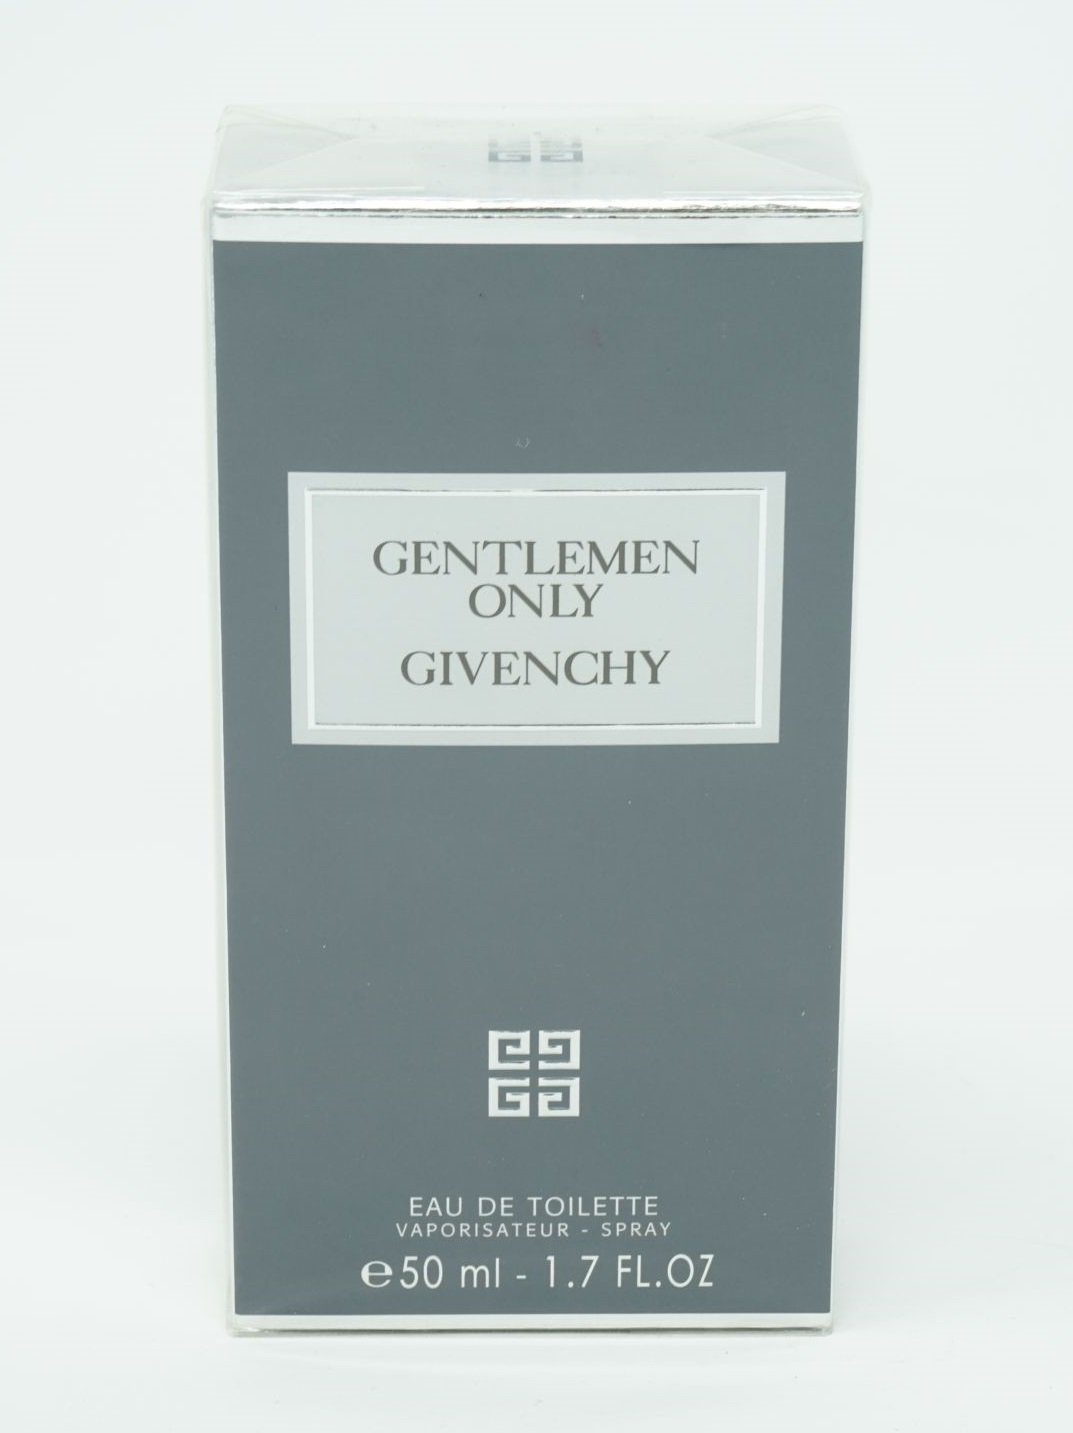 GIVENCHY Eau de Toilette Givenchy Gentlemen 50ml Eau Toilette Spray de Only